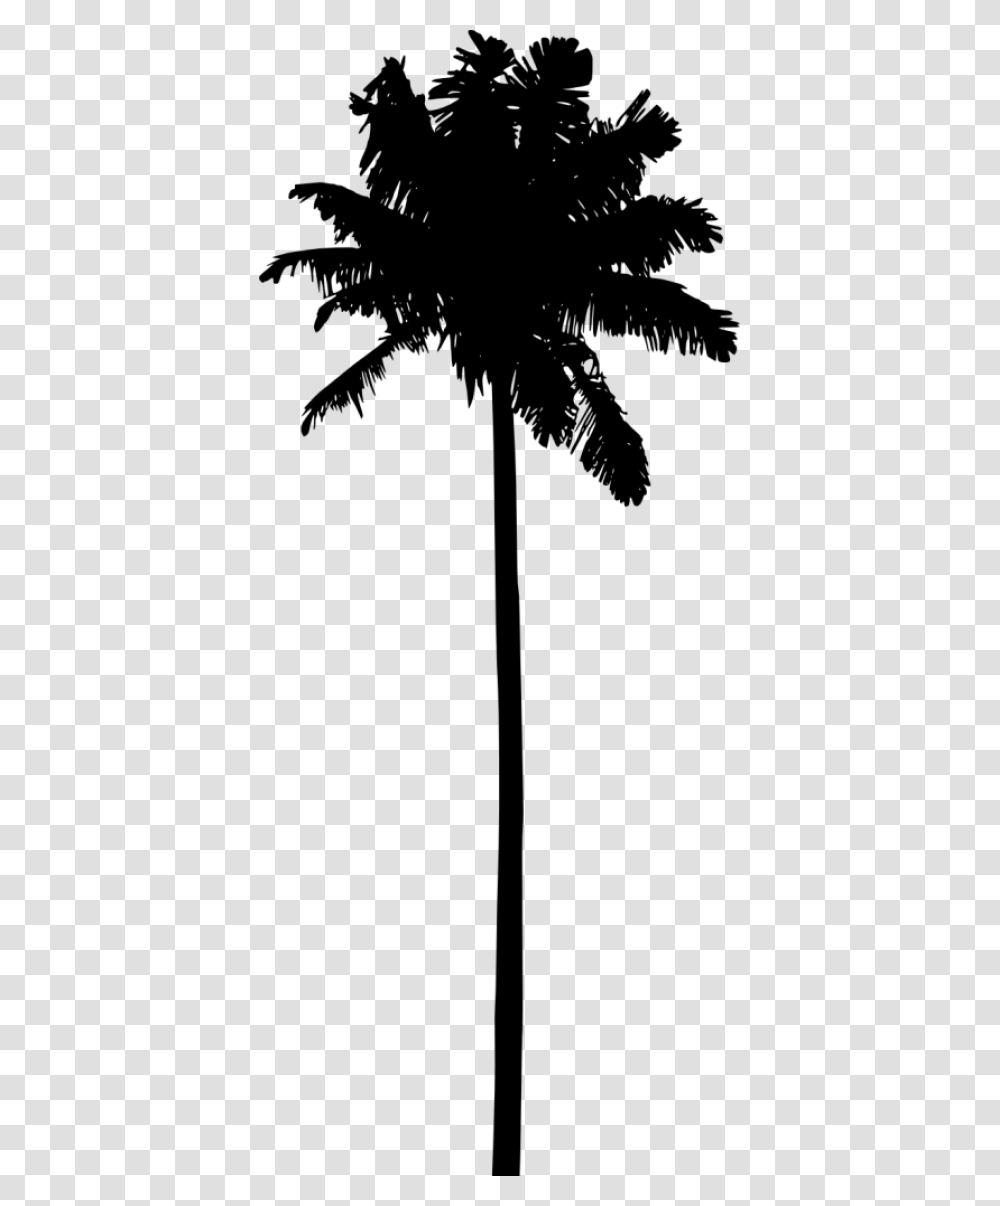 Palm Tree Silhouette Hd Palm Tree Silhouette, Plant, Lamp Post, Arecaceae, Utility Pole Transparent Png